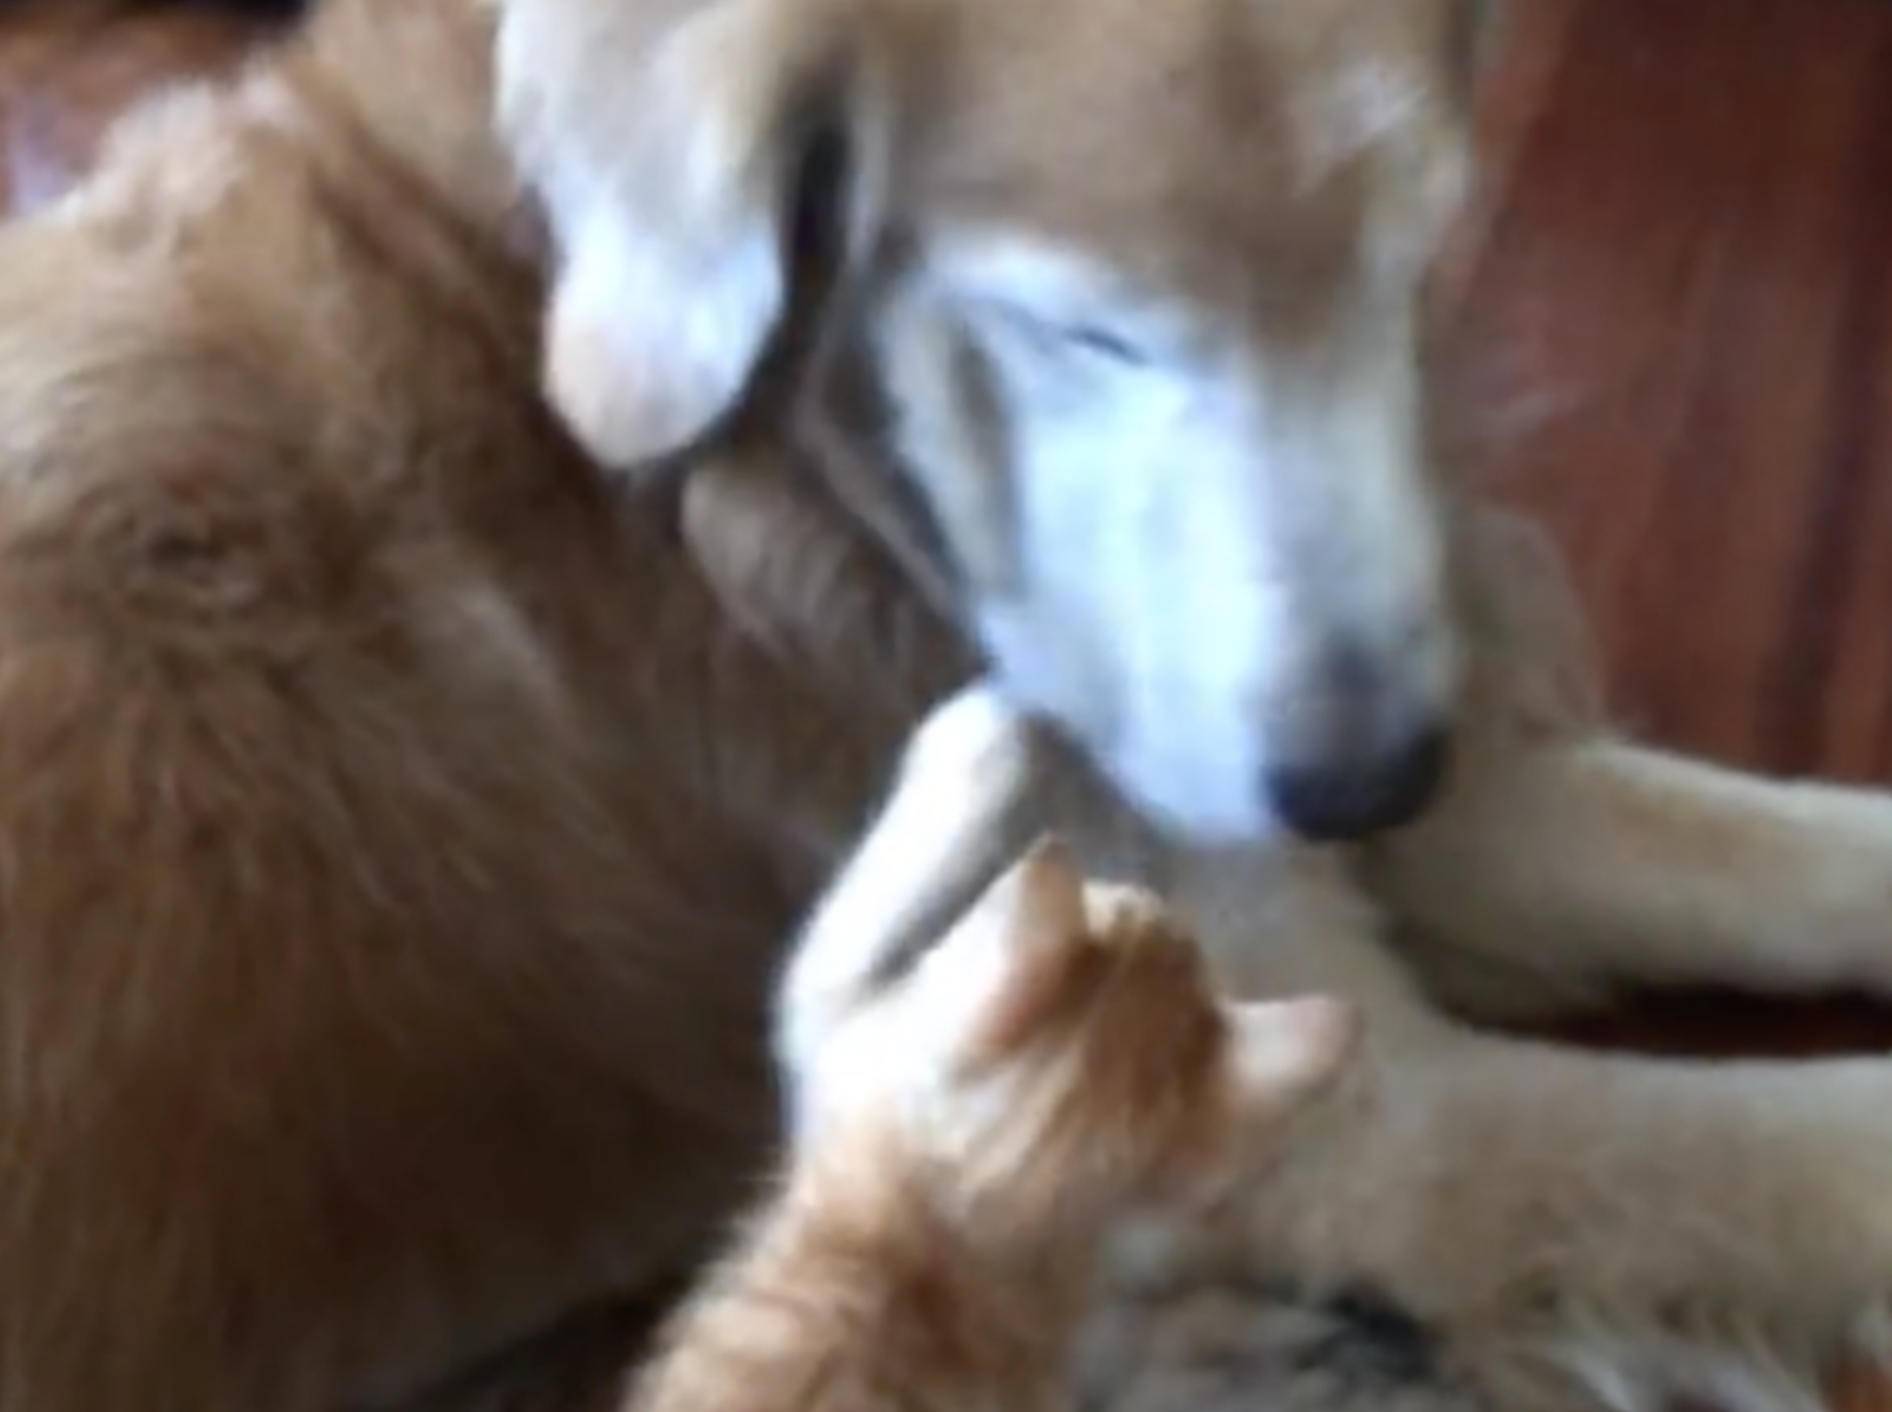 Hund Keelo und Kätzchen Koda lieben es zu schmusen - Bild: YouTube / Keelo and Koda